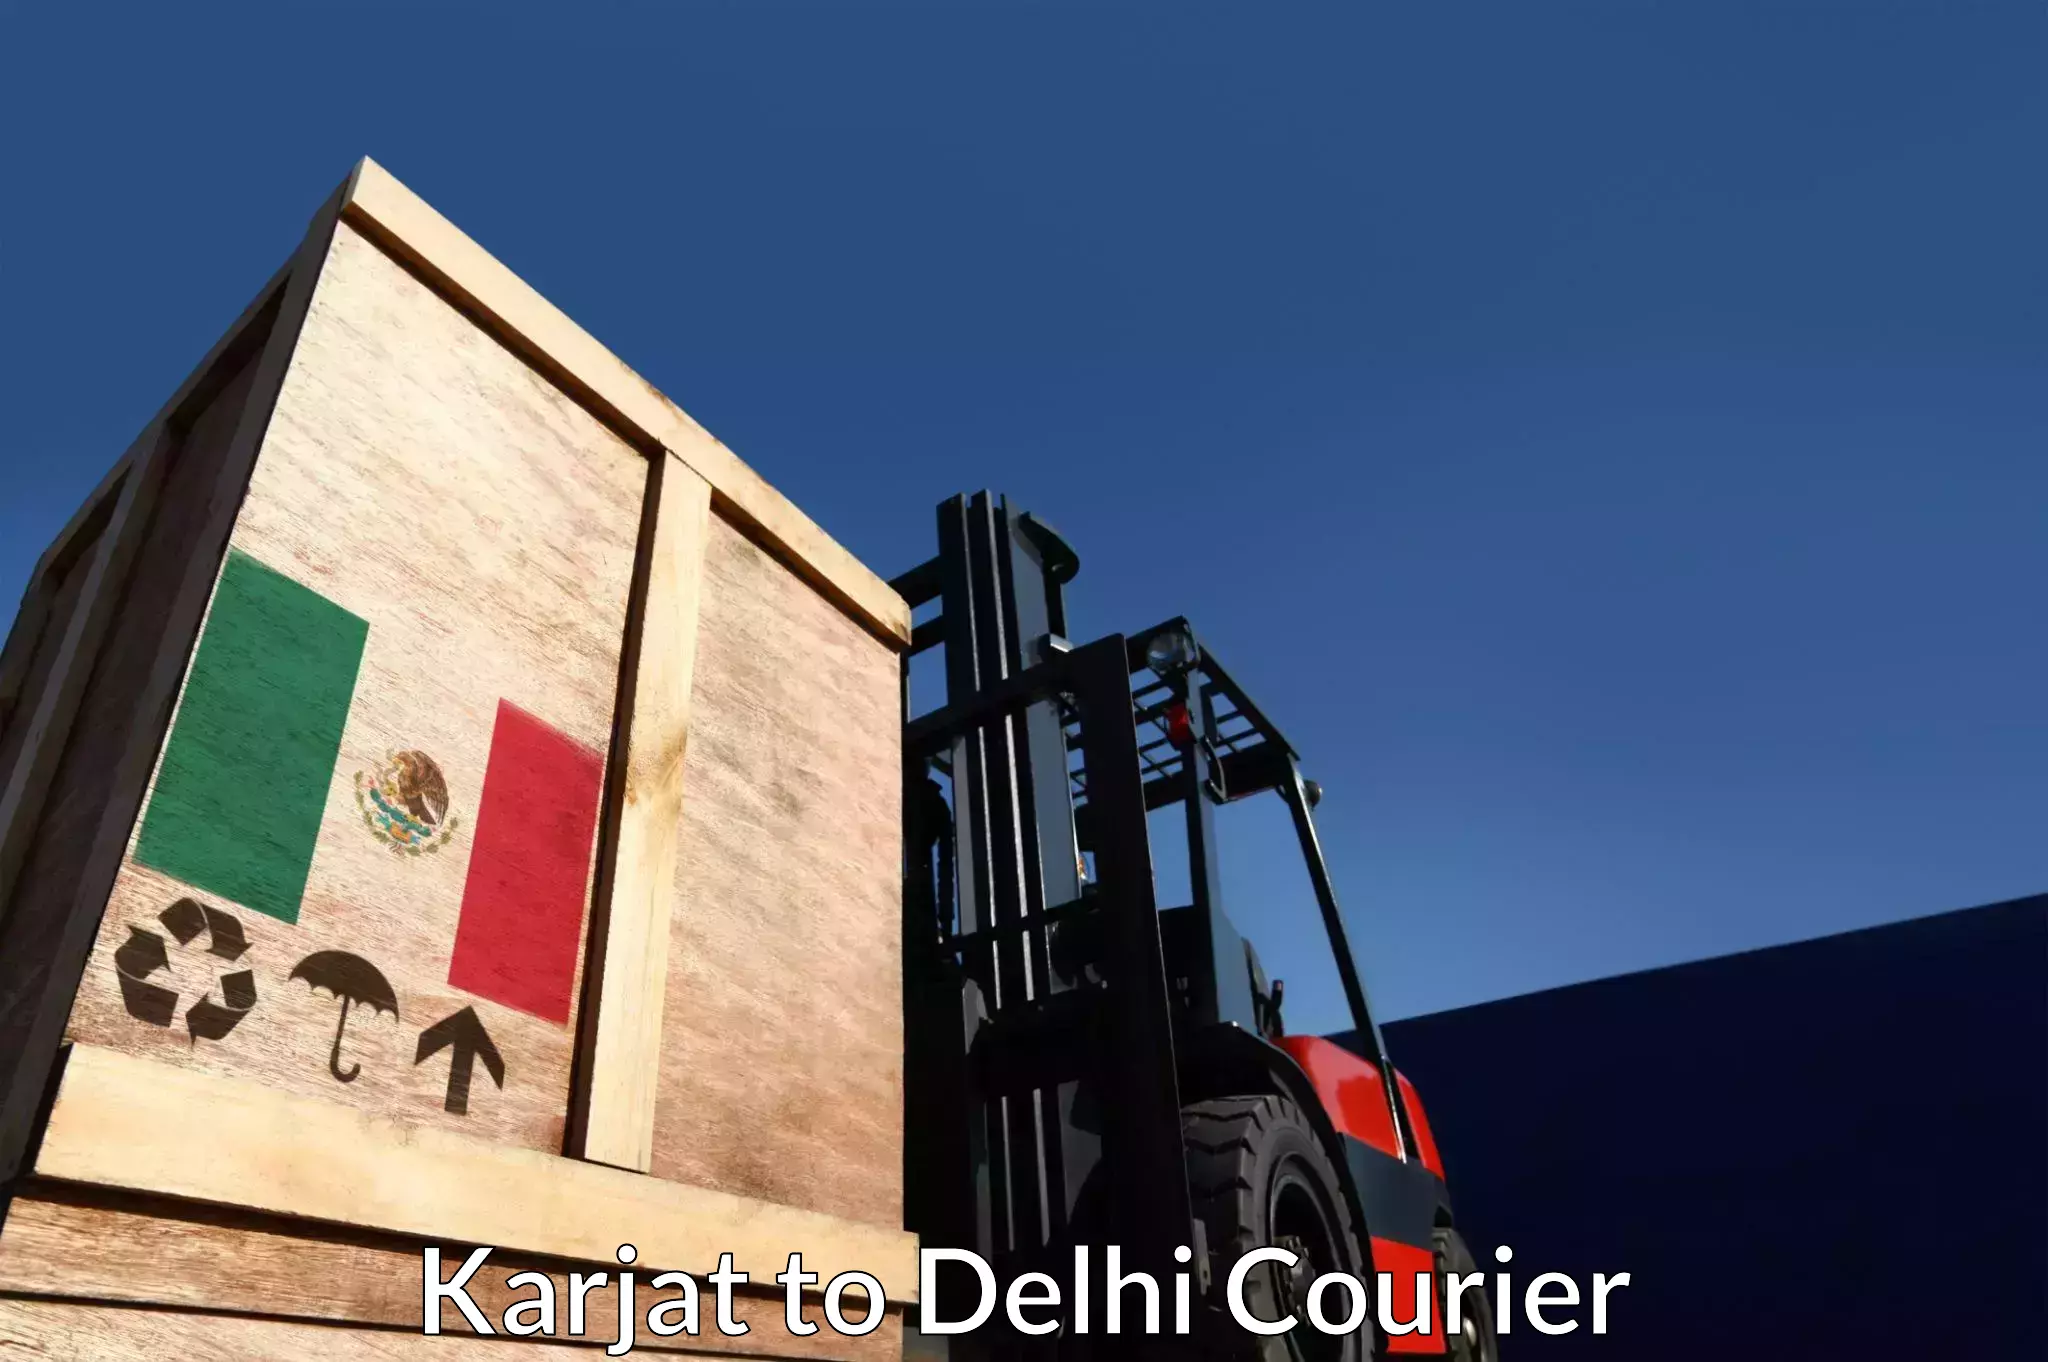 Professional courier handling Karjat to Burari